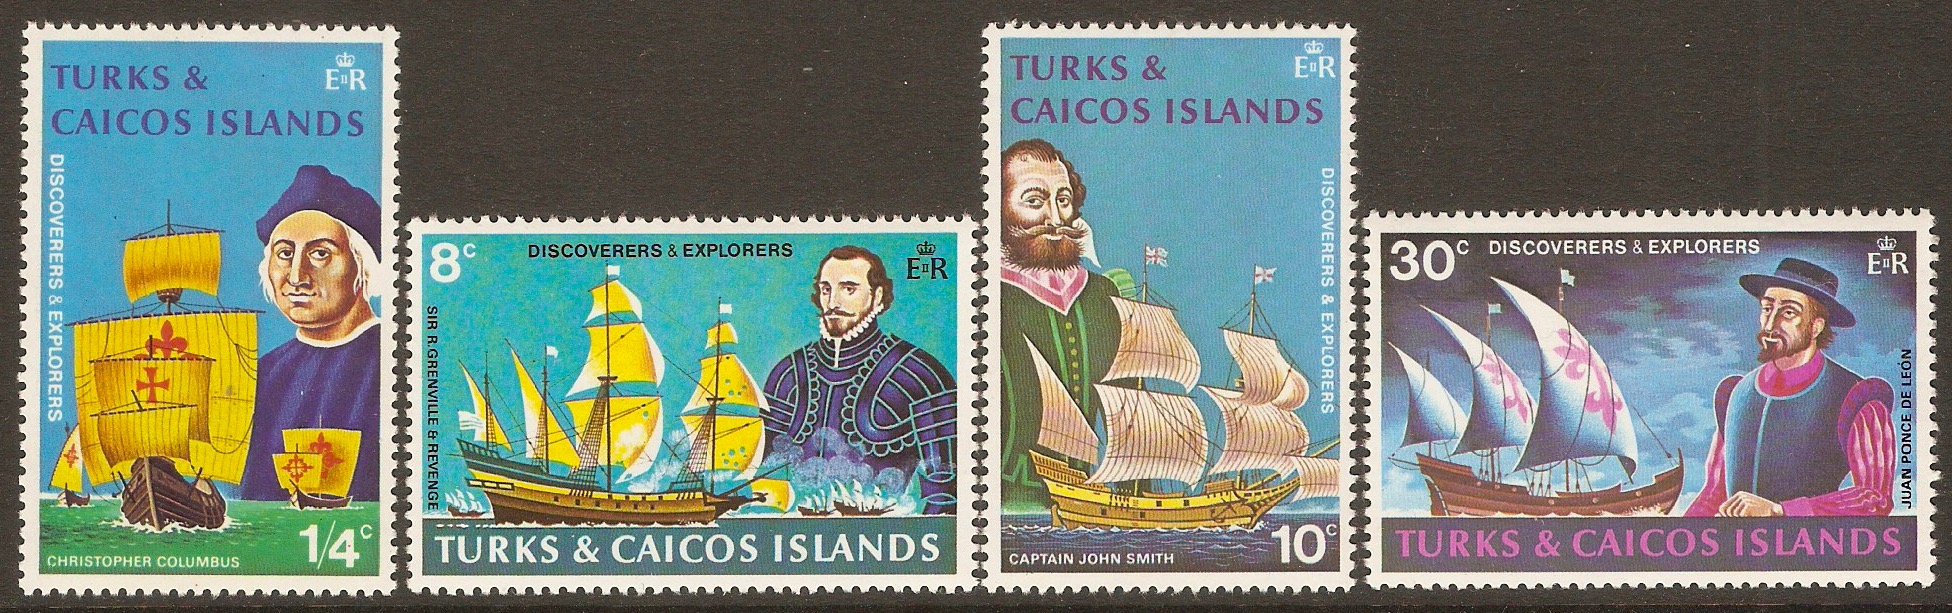 Turks and Caicos 1972 Discoverers & Explorers set. SG368-SG371.